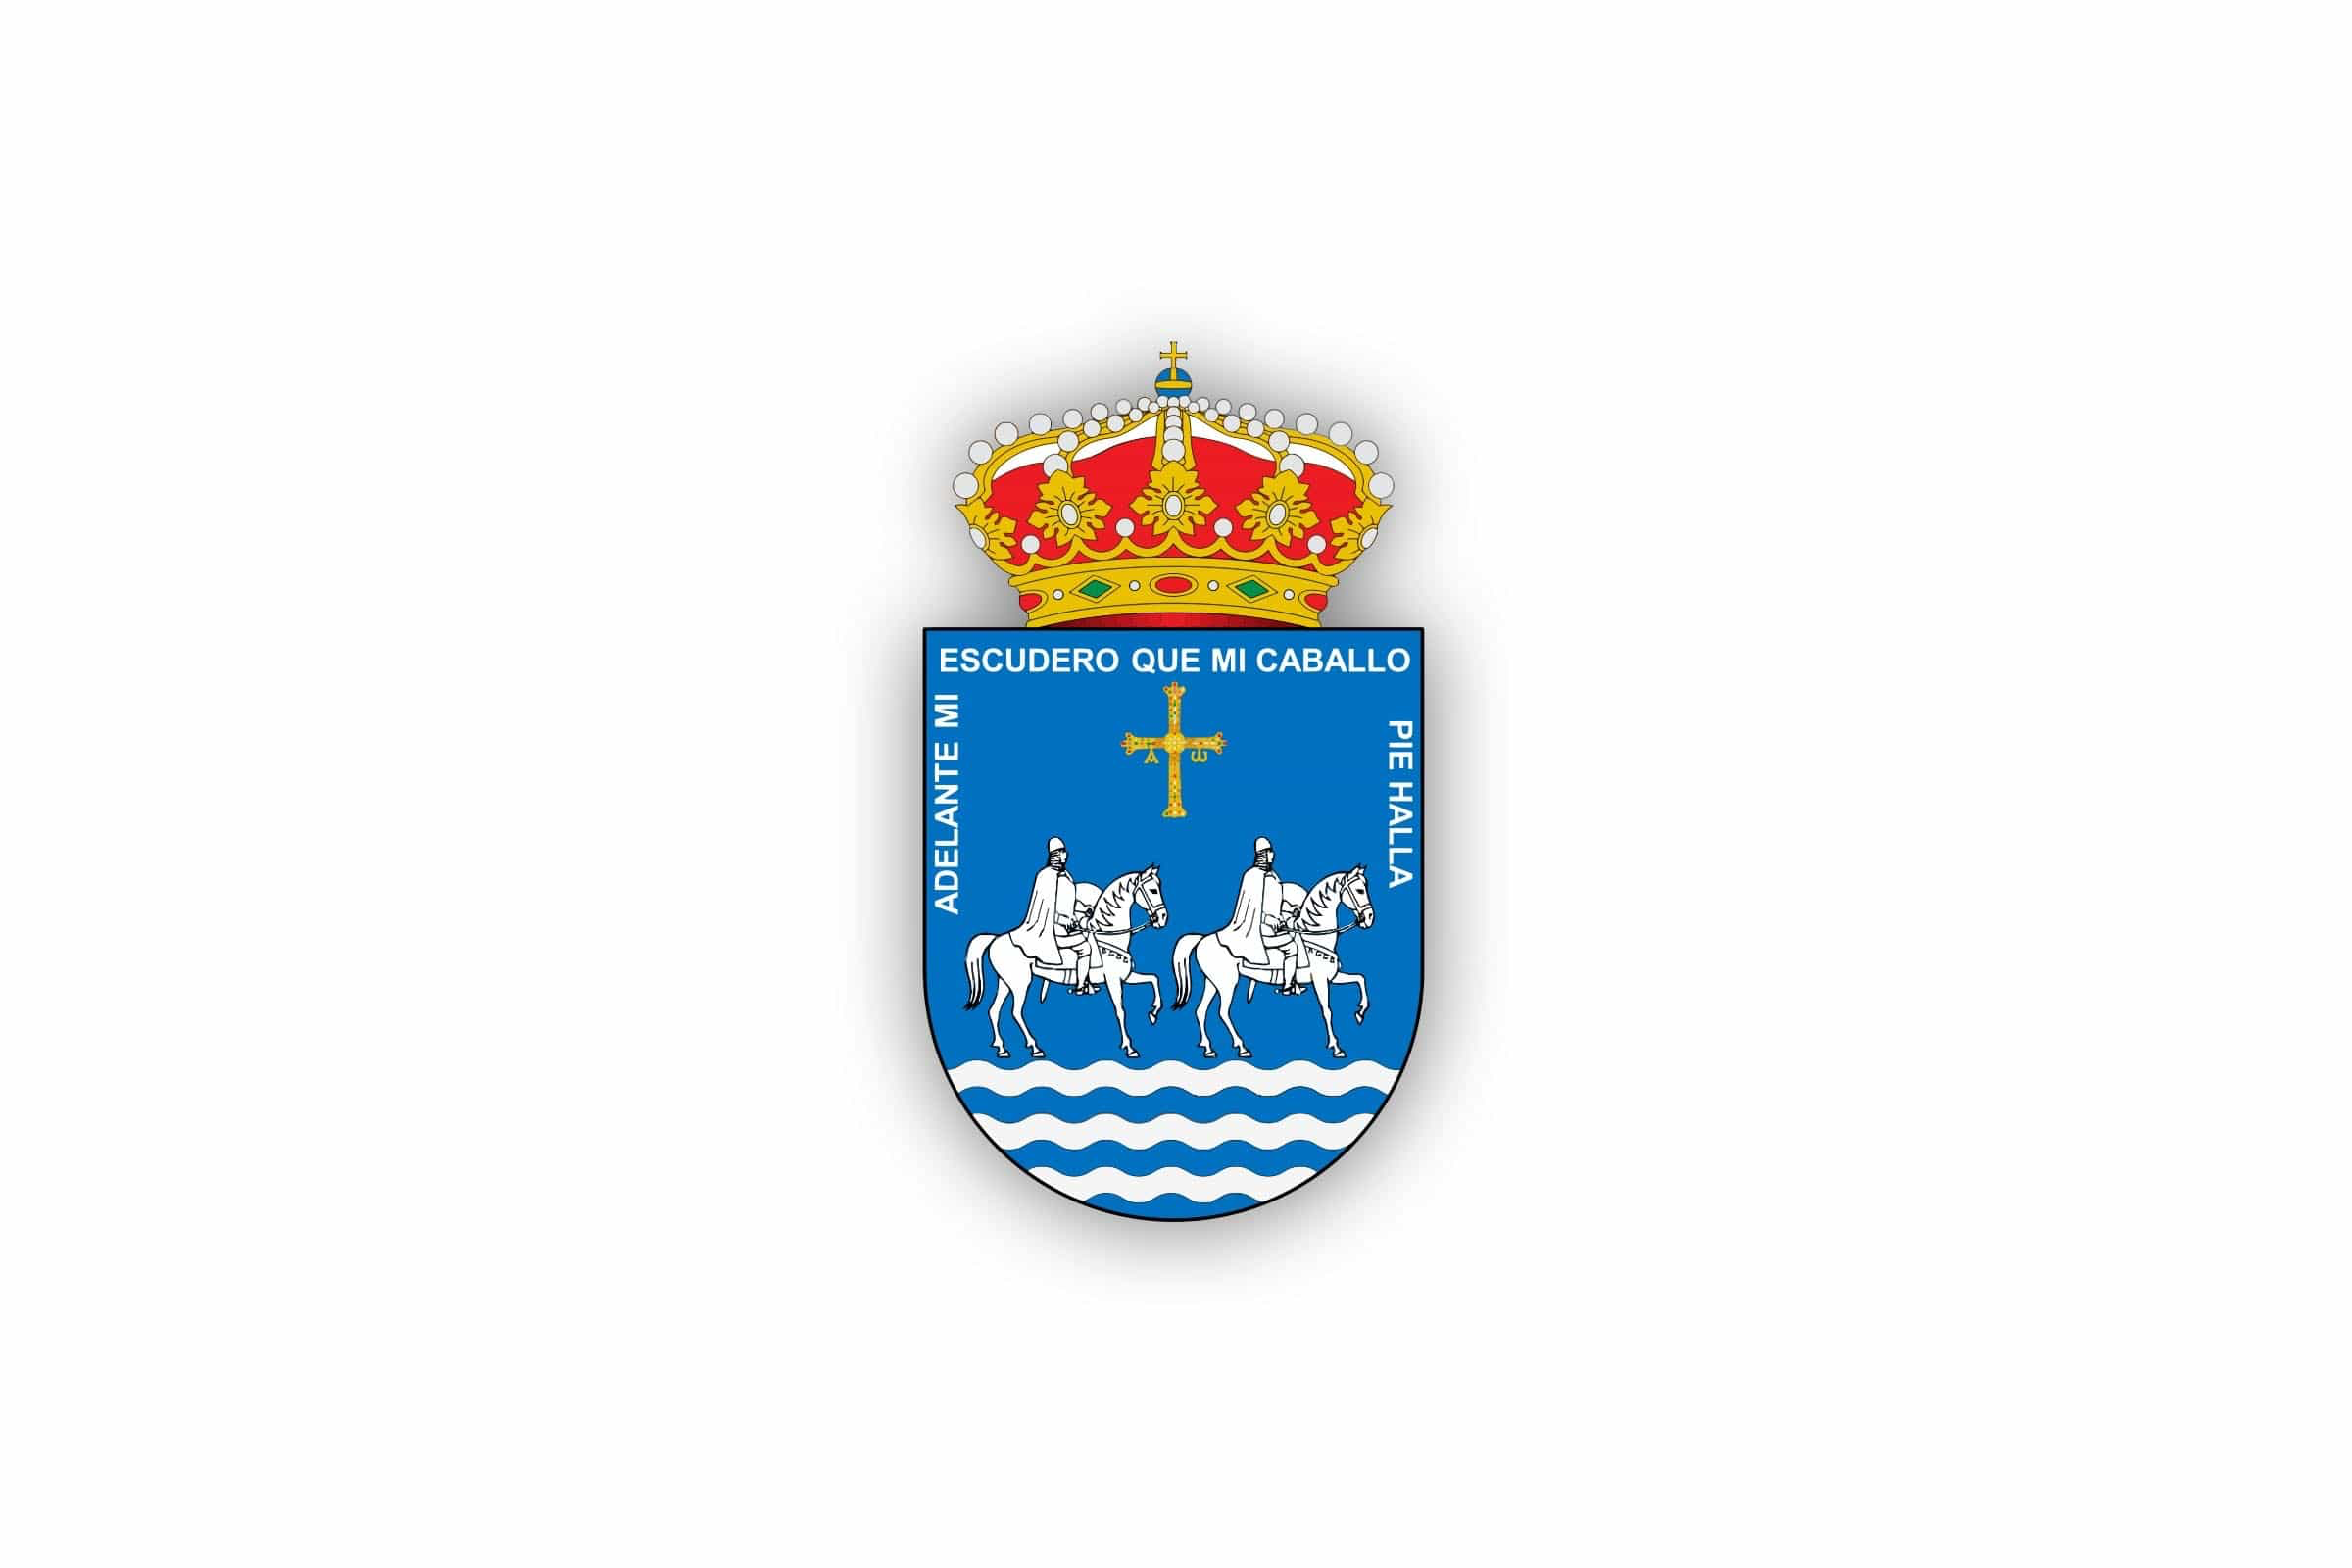 Escudo del concejo de Piloña